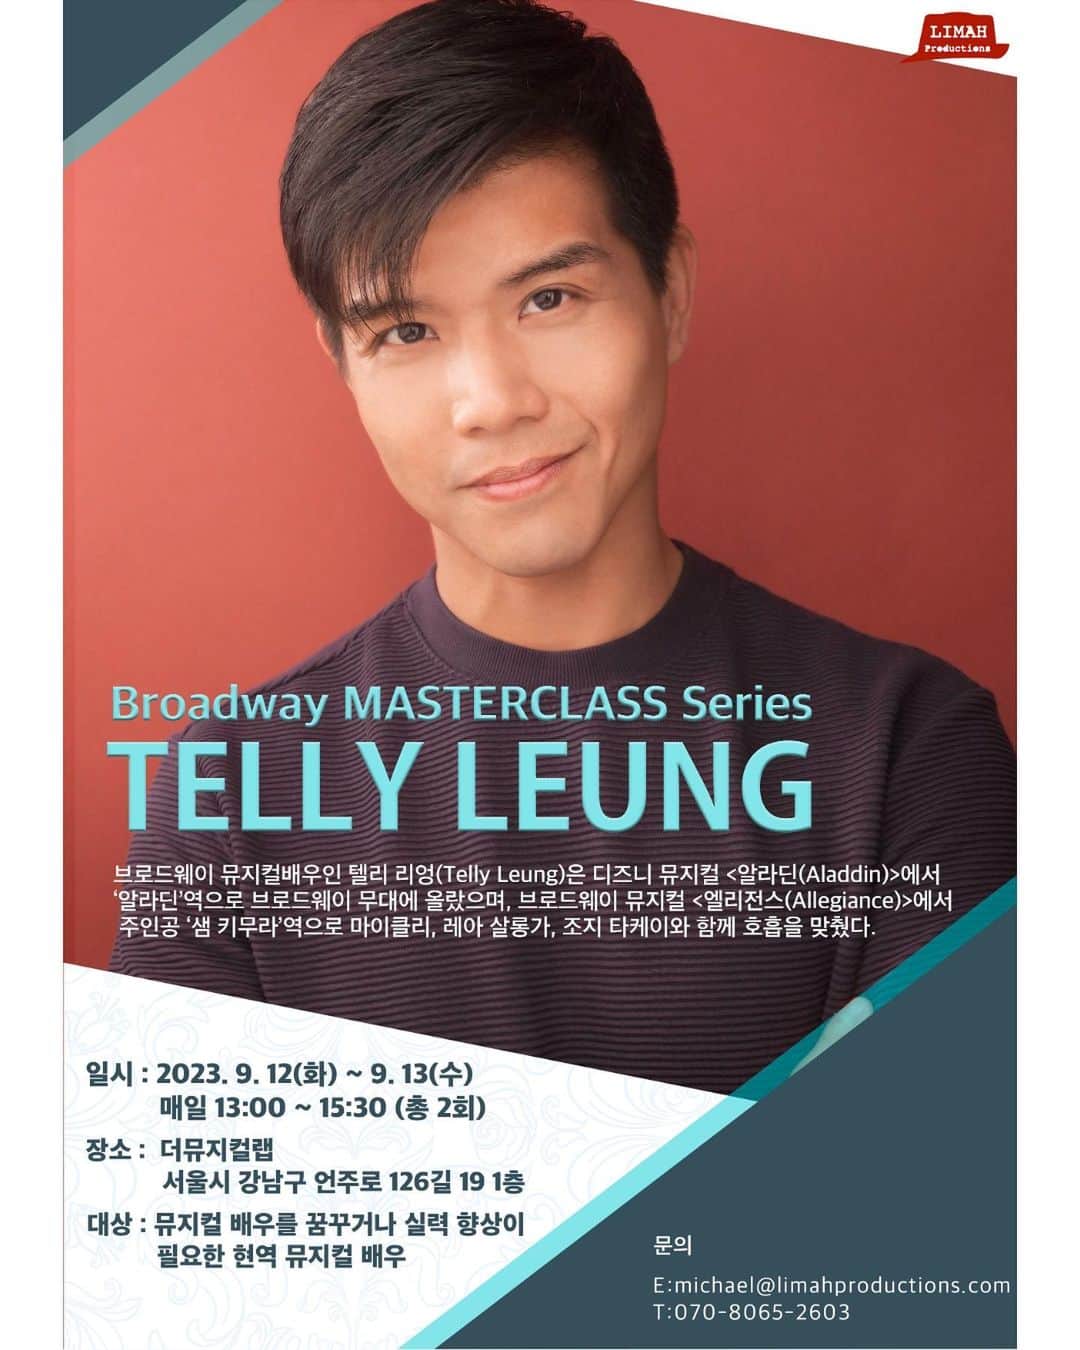 テリー・レオンのインスタグラム：「I am incredibly proud to have my dear friend and Broadway Veteran TELLY LEUNG be the first Masterclass teacher in my new Broadway MASTERCLASS series here in Seoul!  ⁣ 저의 사랑하는 친구이자 브로드웨이 베테랑인 Telly Leung이 이곳 서울에서 열리는 나의 새로운 브로드웨이 MASTERCLASS 시리즈의 첫 번째 마스터클래스 교사가 된 것을 매우 자랑스럽게 생각합니다.⁣ ⁣ #tellyleung #텔리리엉 #마이클리 #뮤지컬배우 #뮤지컬 #masterclass #브로드웨이 #broadway #actor #aladdin #dimf #딤프 #딤프뮤지컬스타」